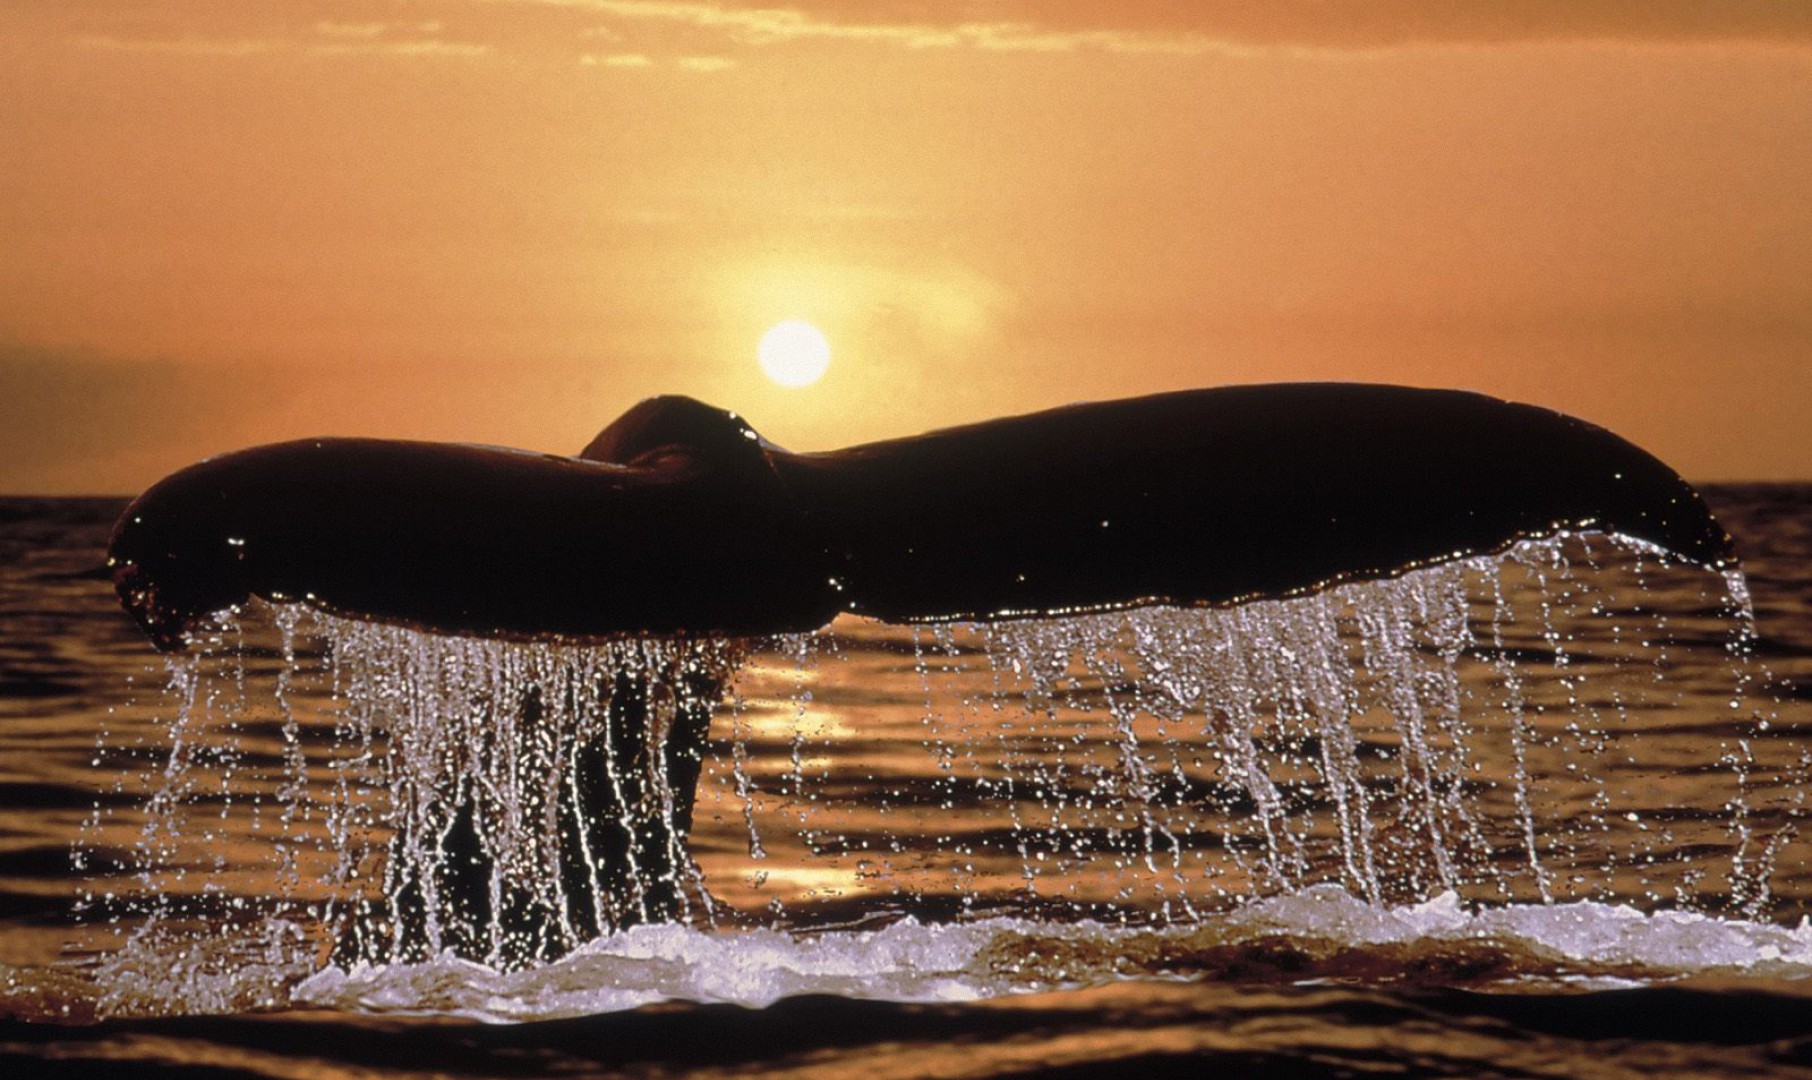 Humpback Whale Tail.jpg